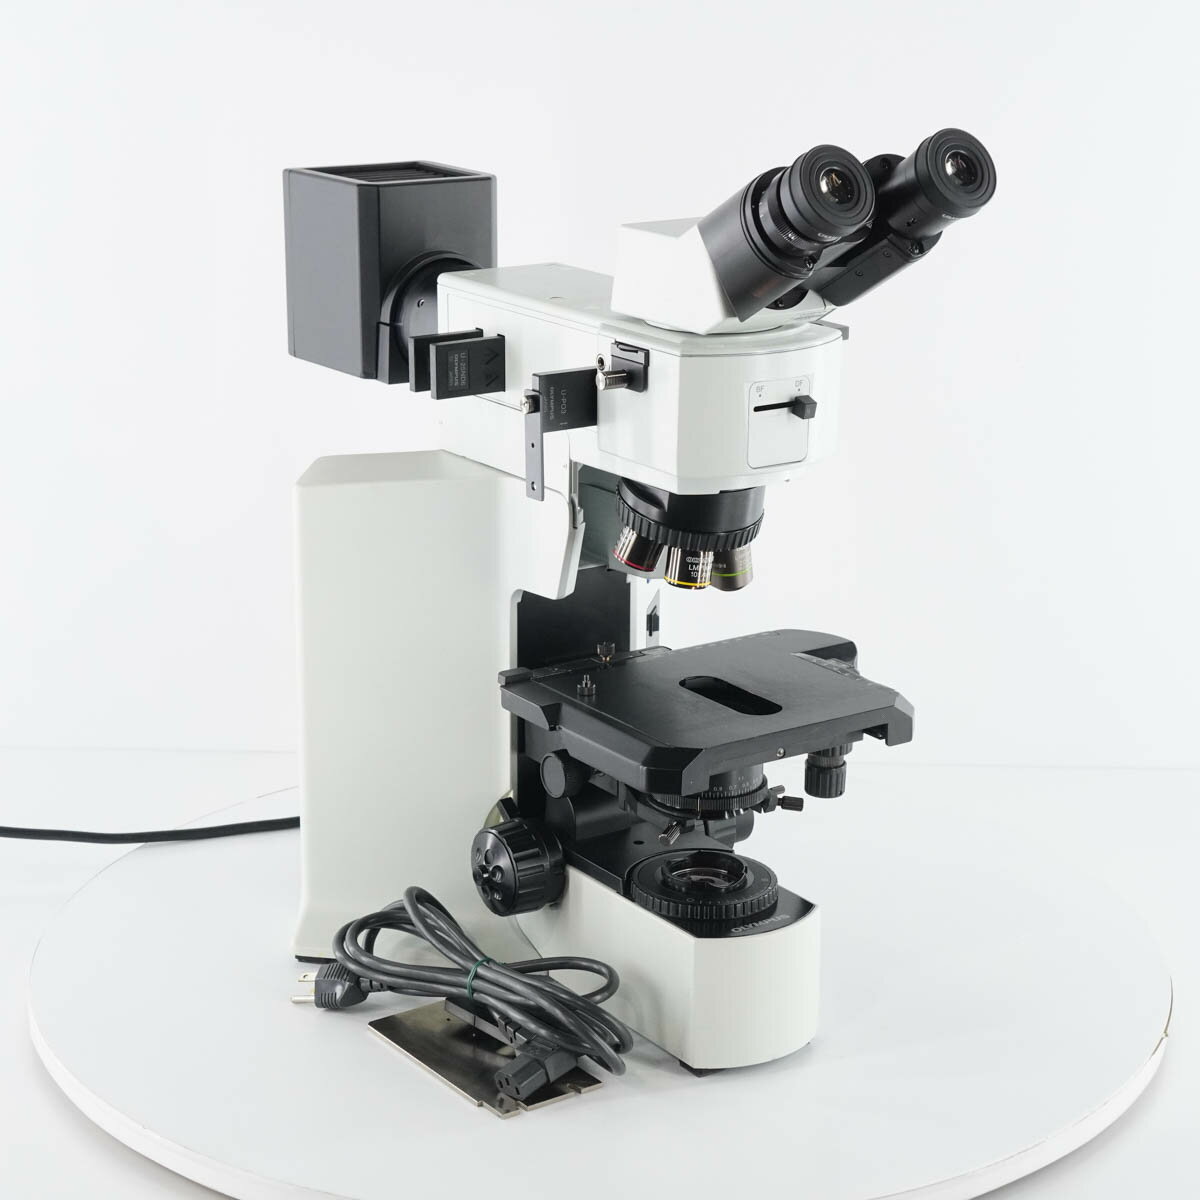 【中古】[PG]8日保証 OLYMPUS BX51TRF Microscope 顕微鏡 U-B130-2 WH15×/14 LMPlanFl 5× 10× 100× N 20× 50× 電源コード [05126-0007]